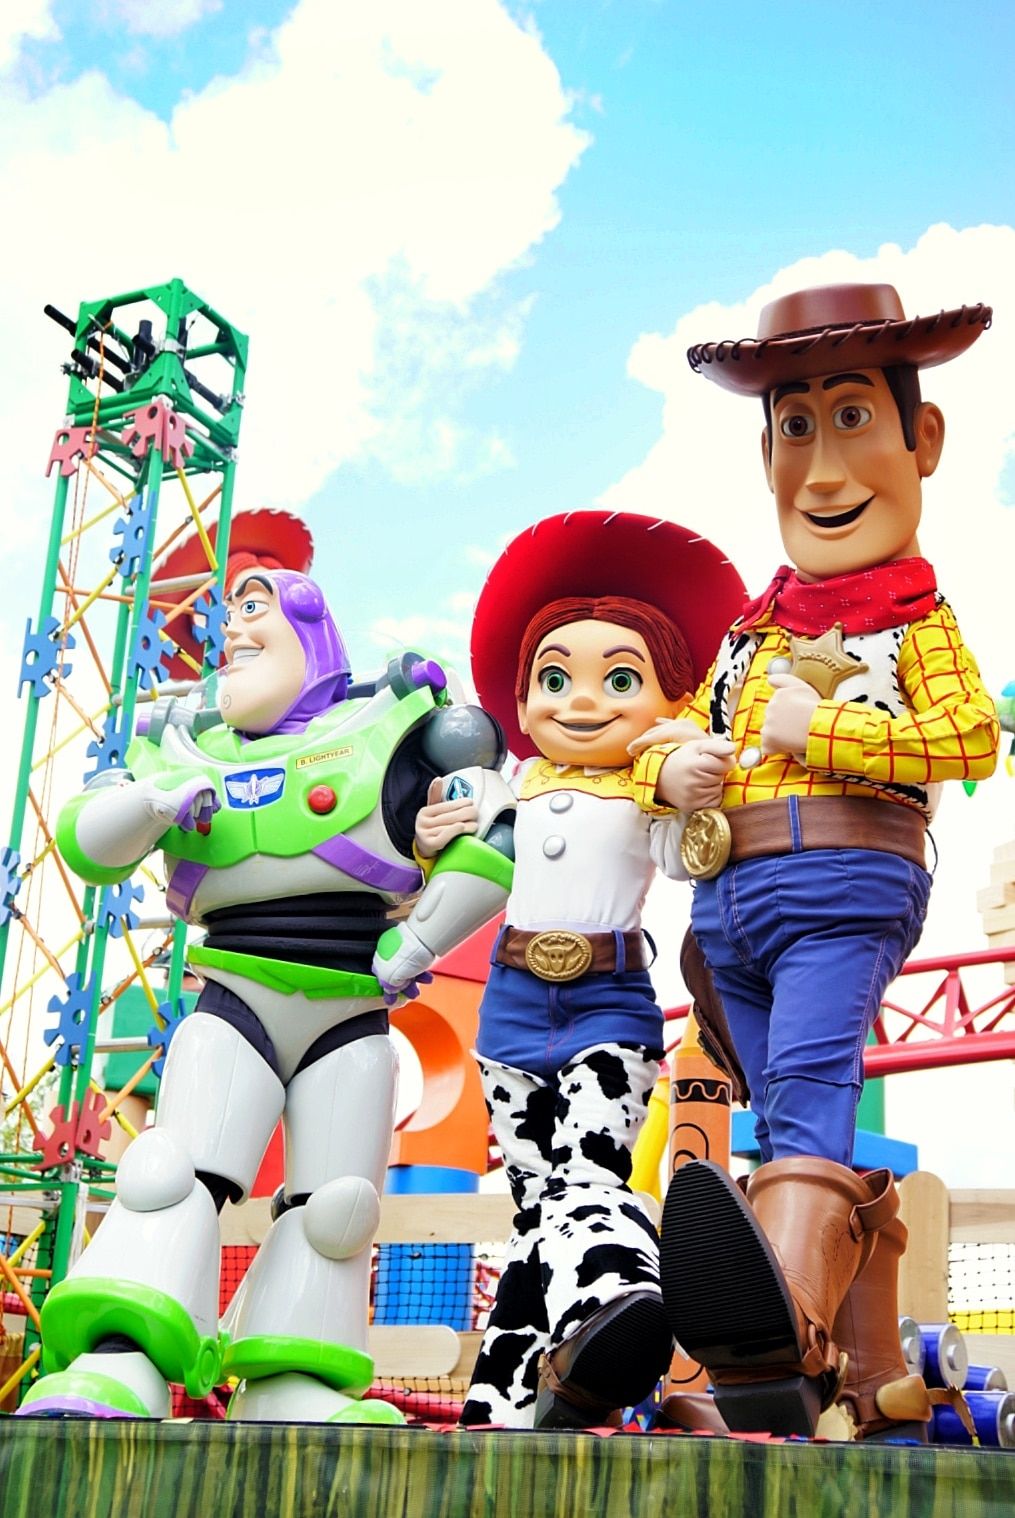 Personatges de Toy Story publicats a la dedicació de la terra de Toy Story